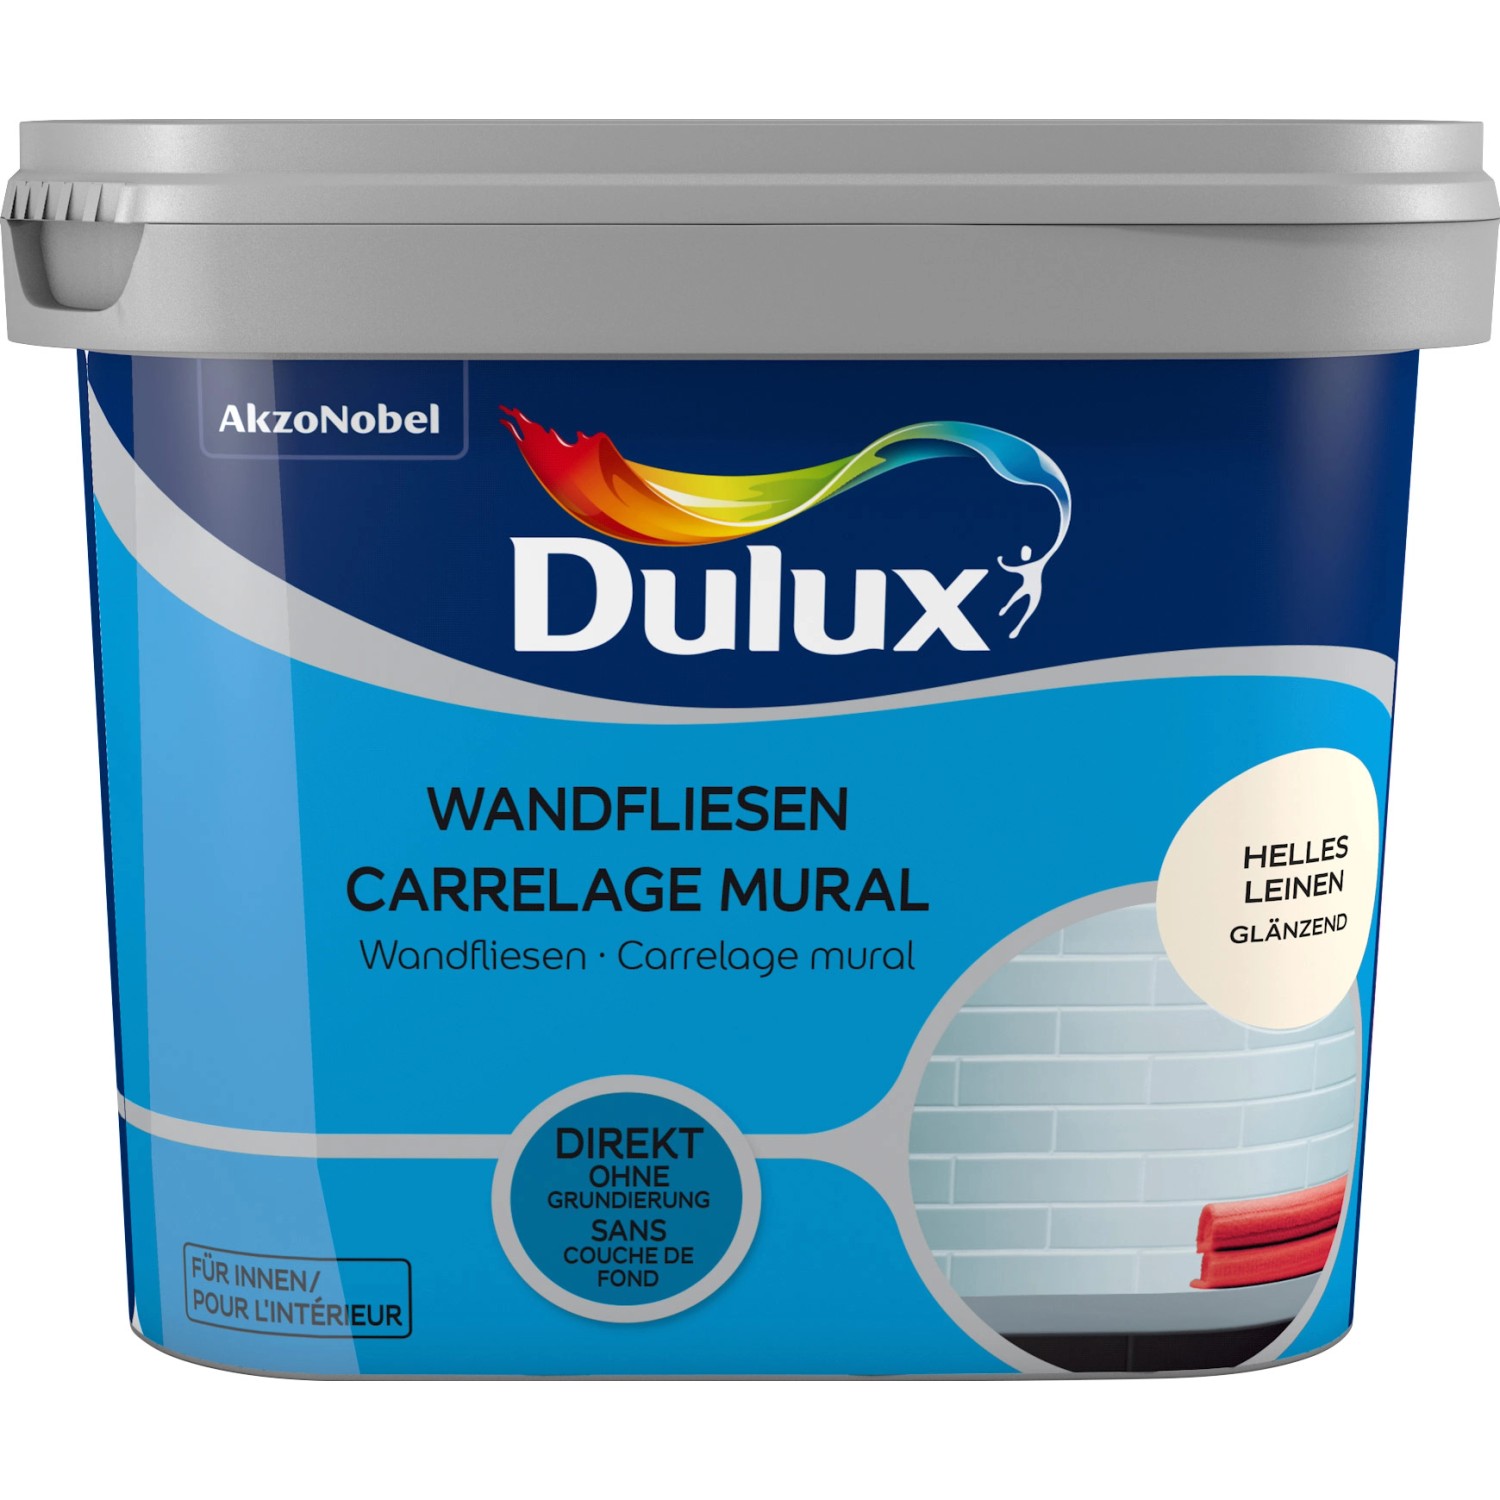 Dulux Fresh Up Wandfliesenlack Glänzend Helles Leinen 750 ml